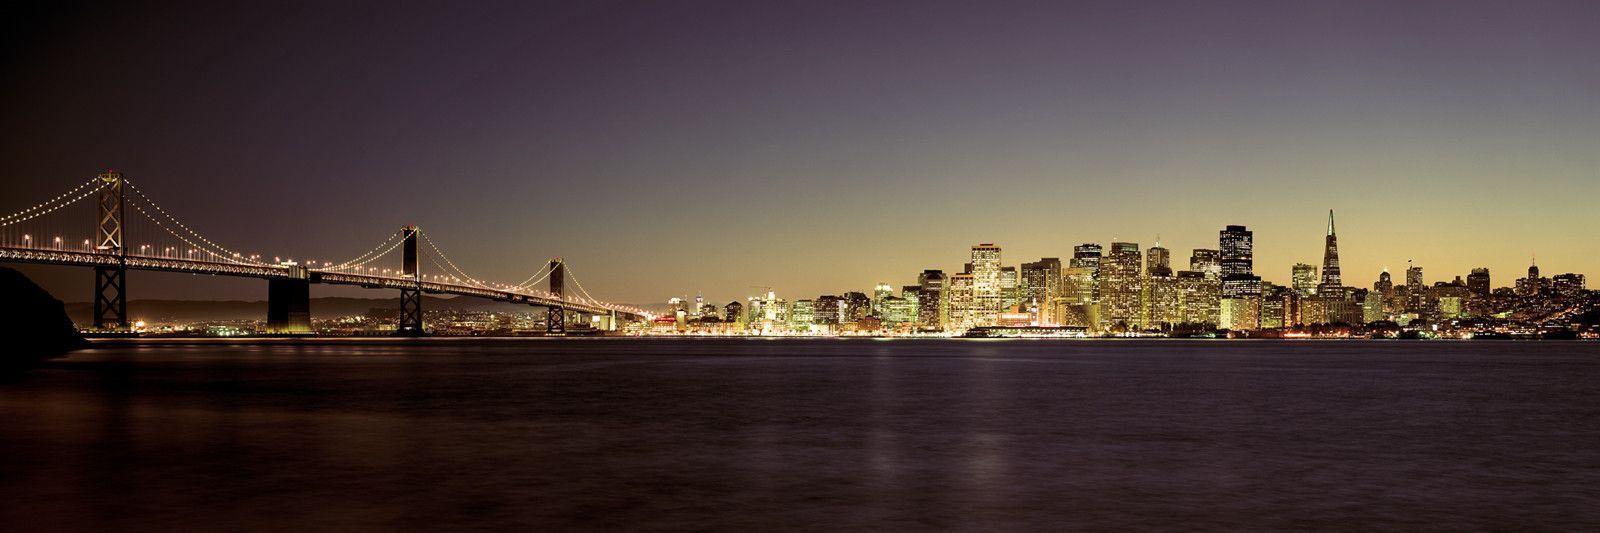 San Francisco at night Wallpaper. HD Wallpaper Base